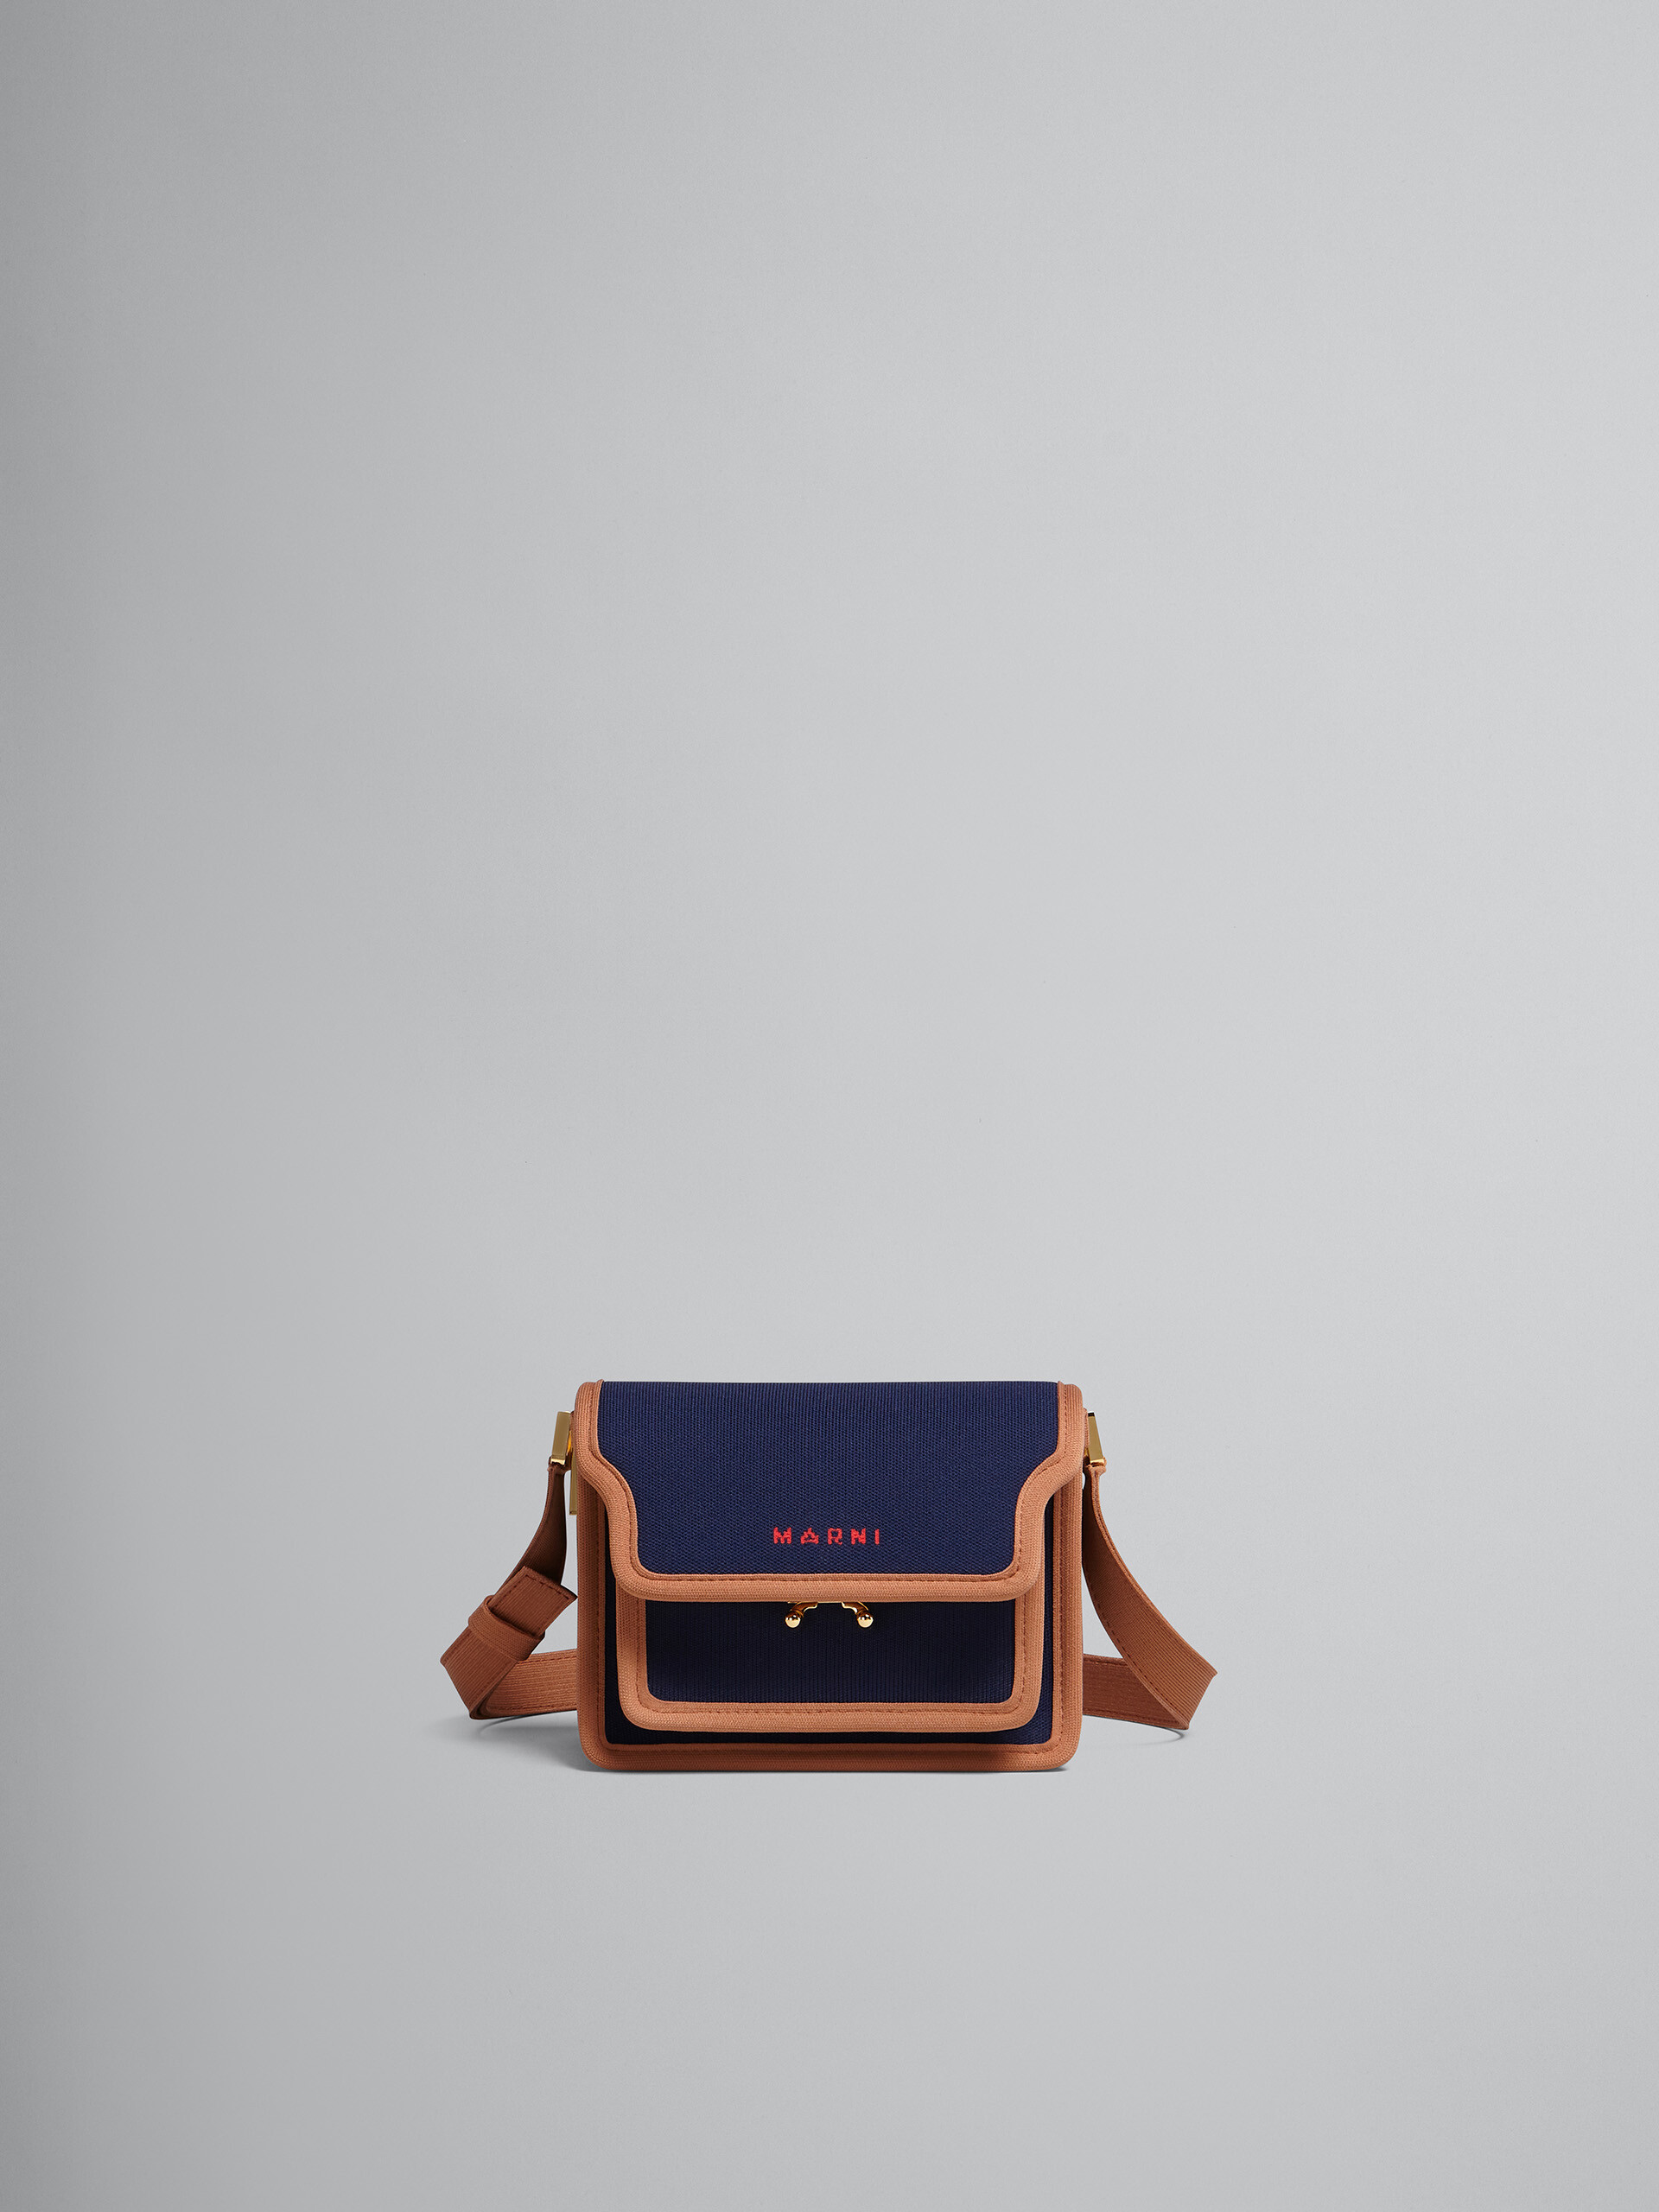 TRUNK SOFT bag mini in jacquard blu e marrone - Borse a spalla - Image 1